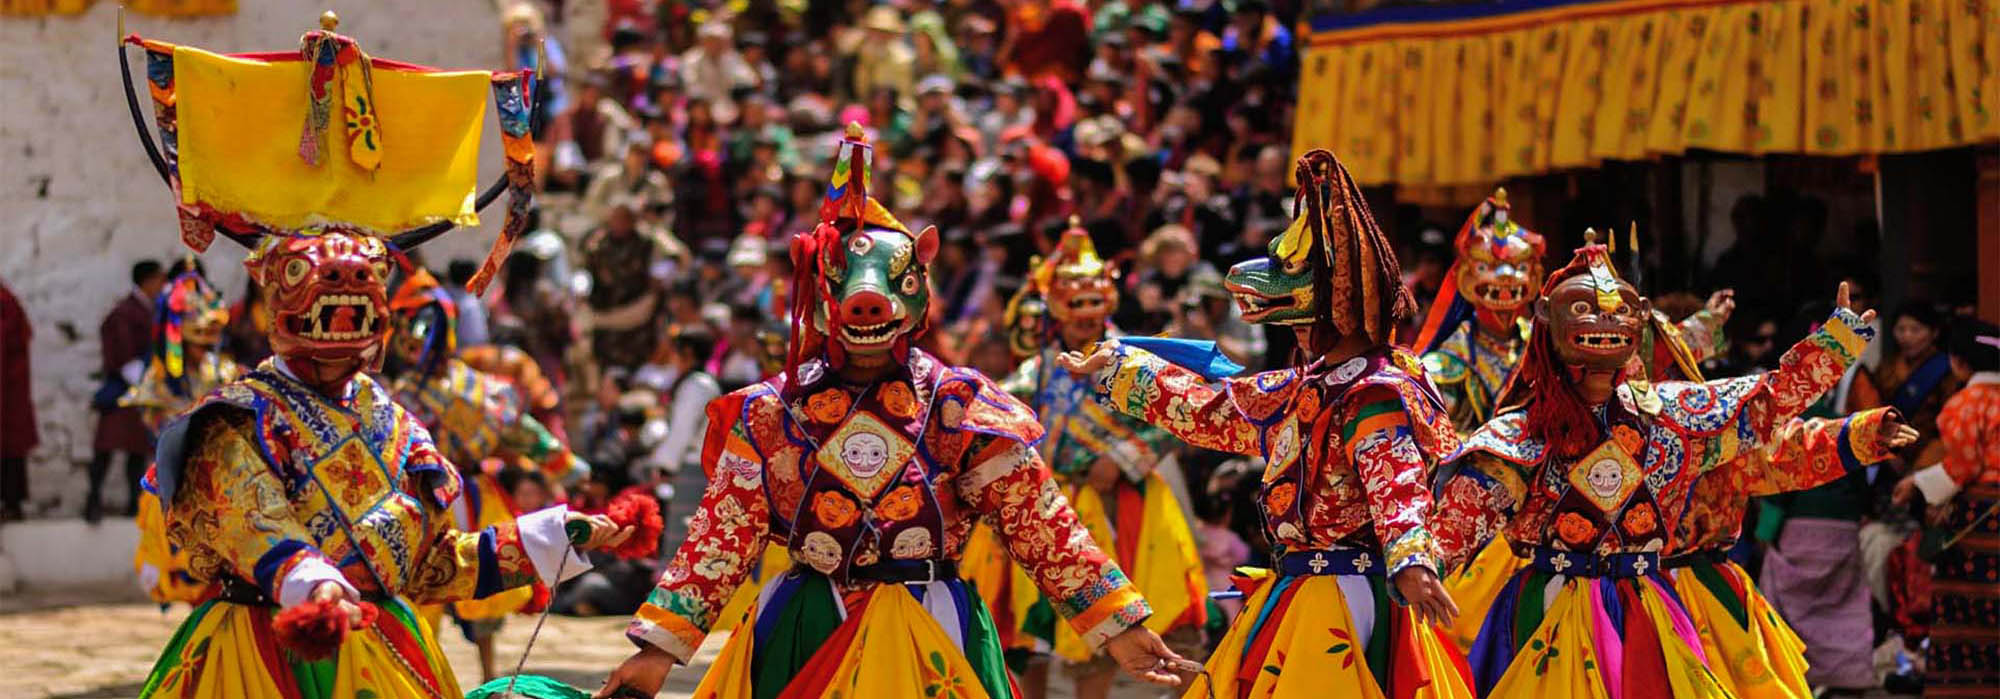 Mask-Dance-in-a-festival-in-Bhutan